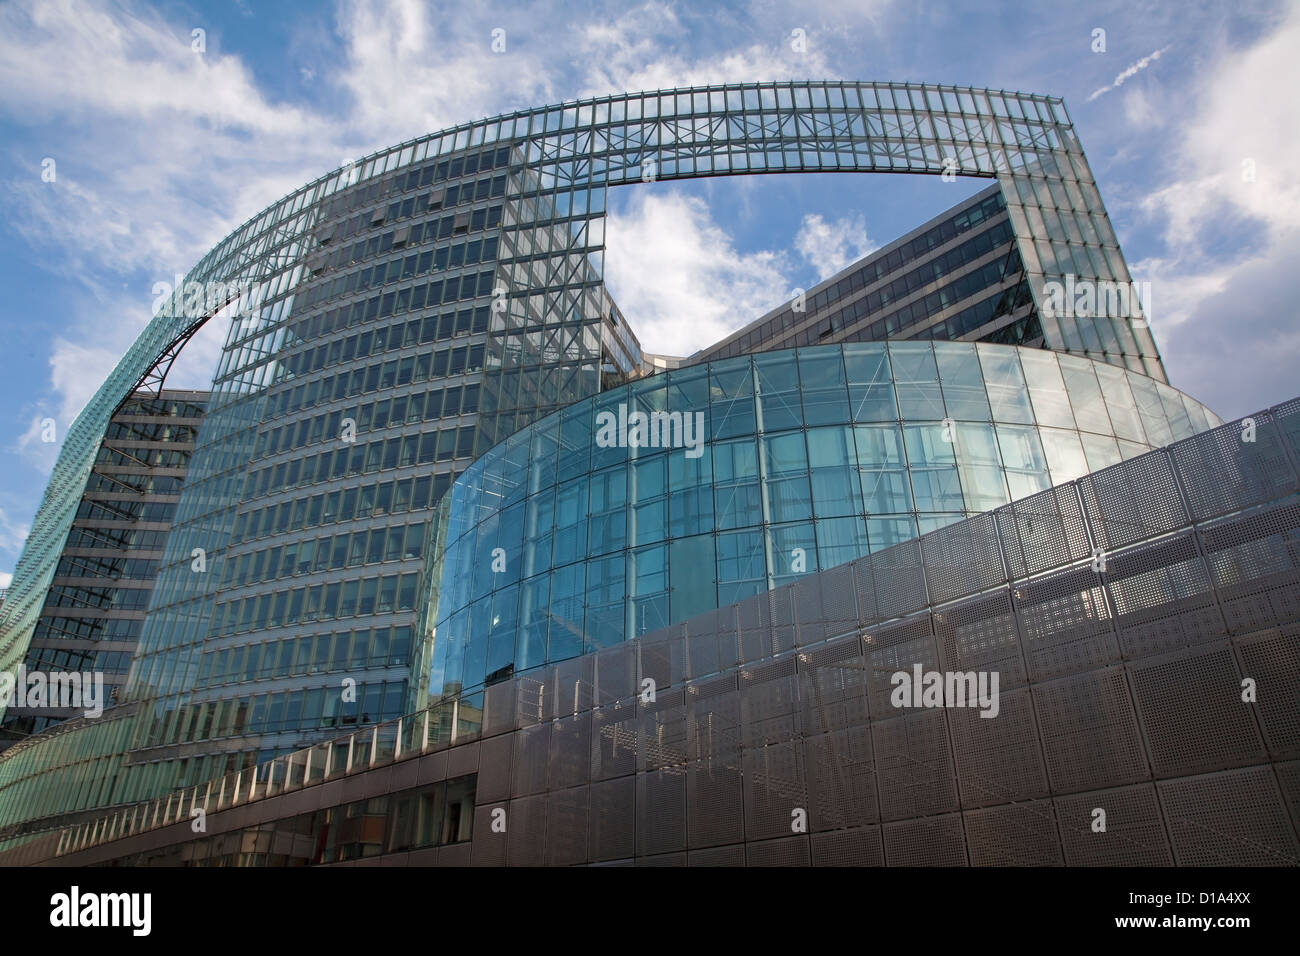 Brüssel - 24 Juni: Europäische Kommission Gebäude am Schumann-Platz am 24. Juni 2012 in Brüssel. Stockfoto